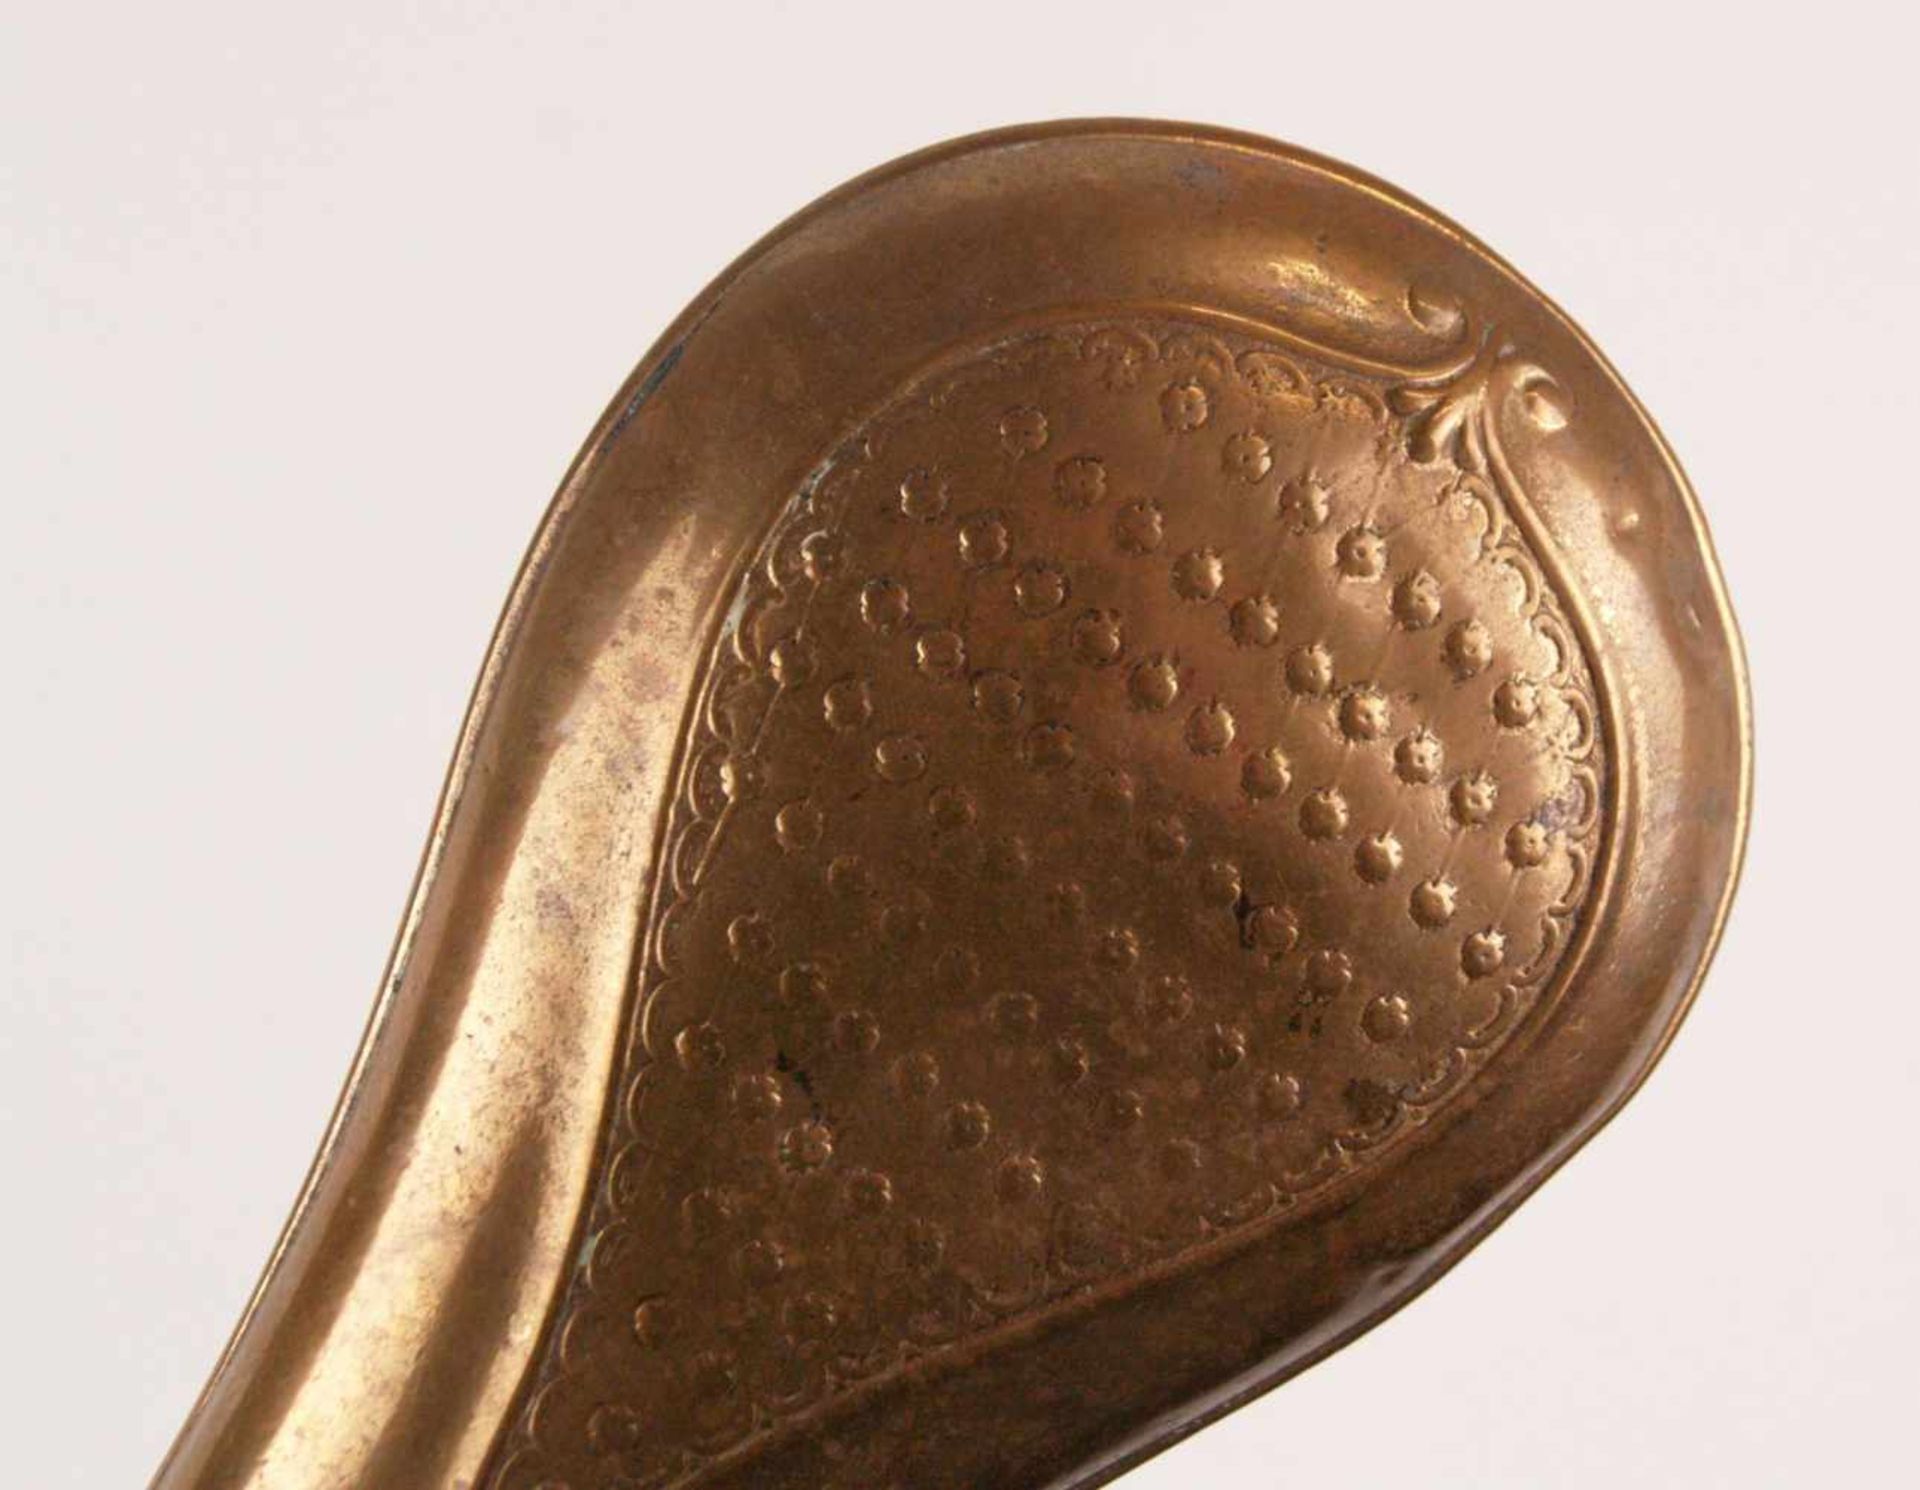 Pulverflasche - Kupfer/Messing, birnenförmiger Korpus mit Reliefdekor, mit Dosiervorrichtung, - Bild 3 aus 4